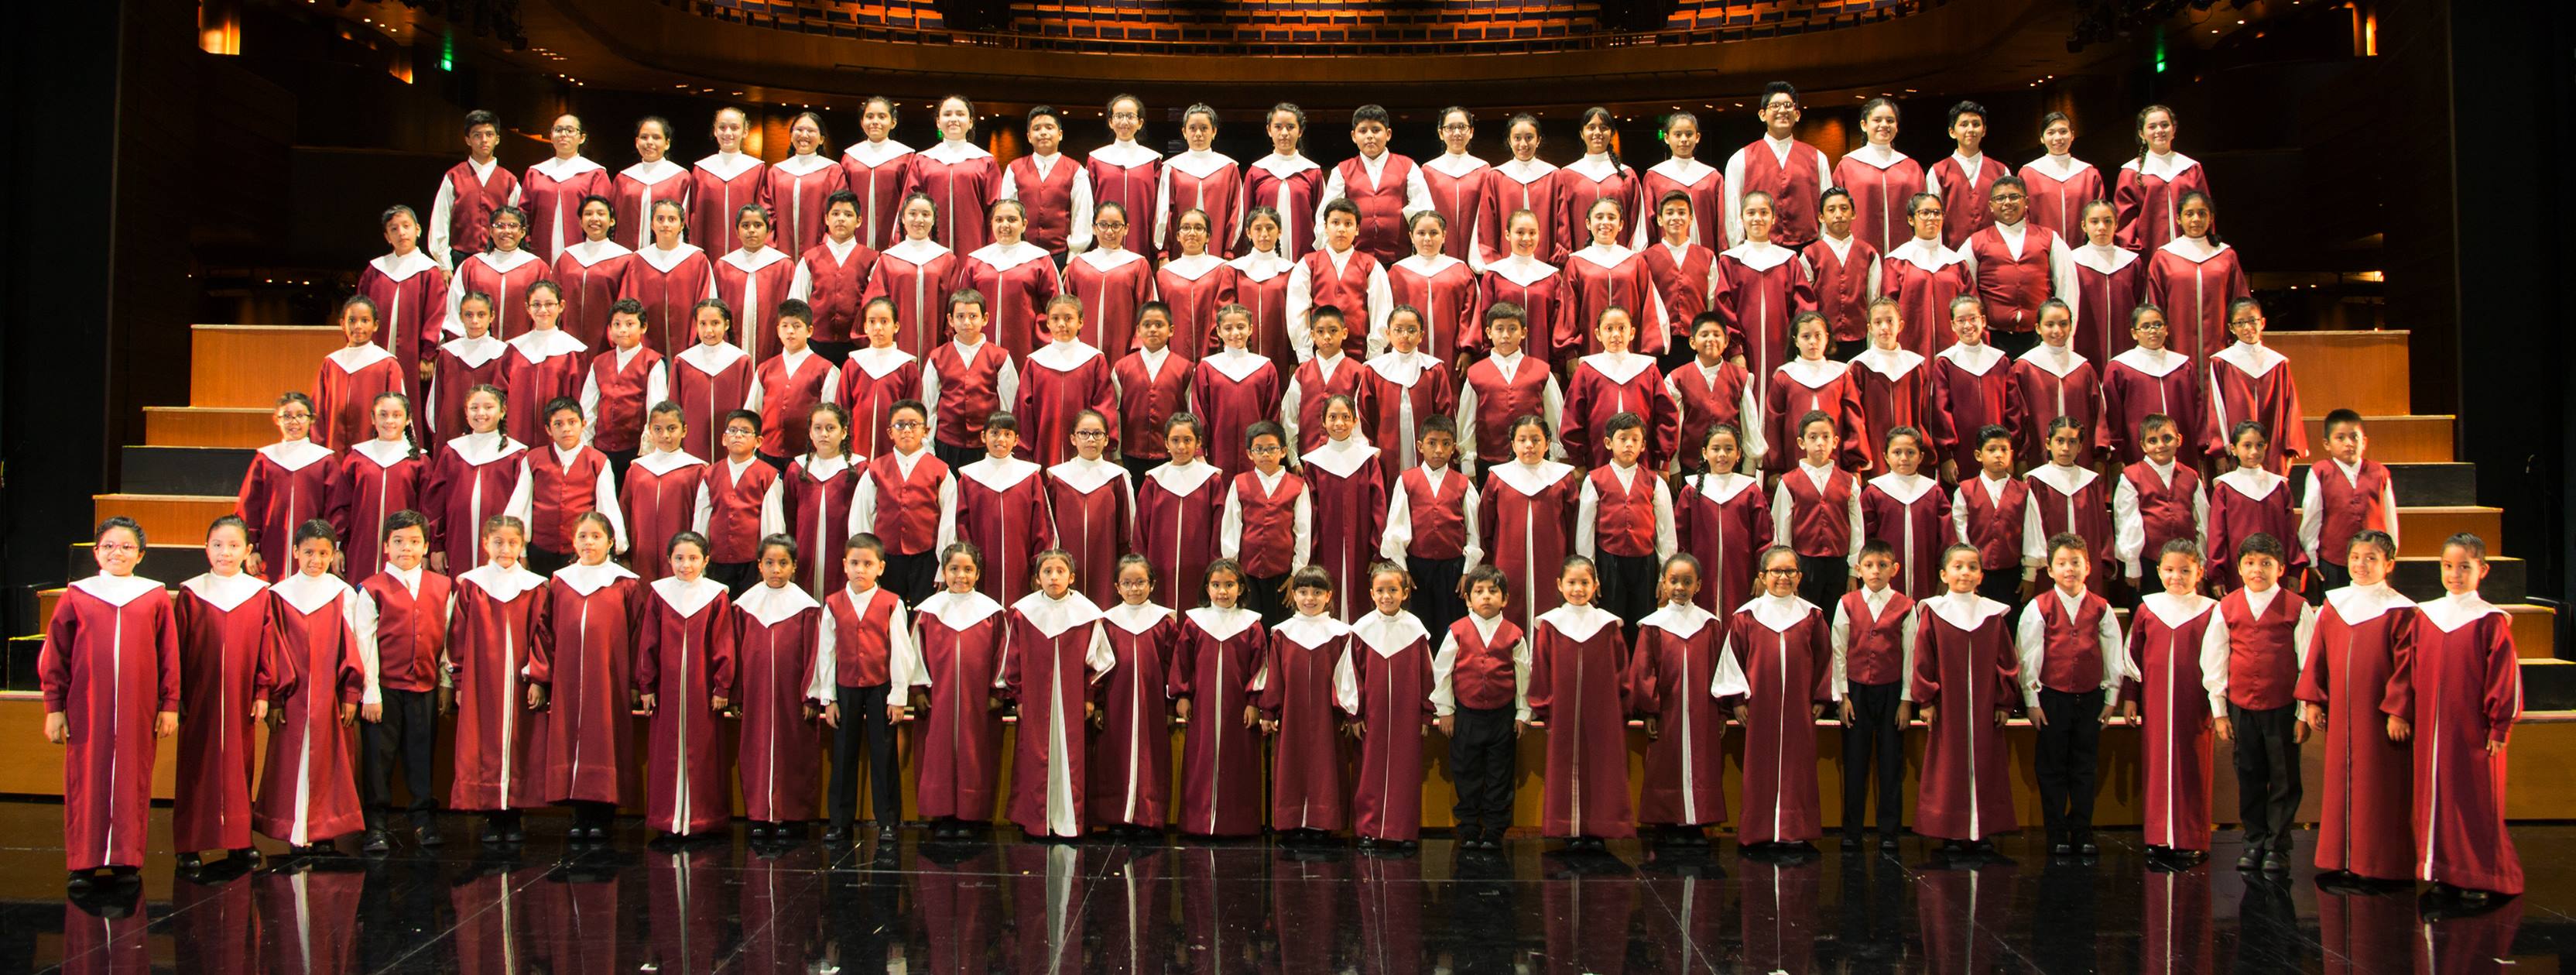 Coro Nacional de Niños y el Coro de la Universidad Morgan State de Estados Unidos realizarán un concierto gratuito